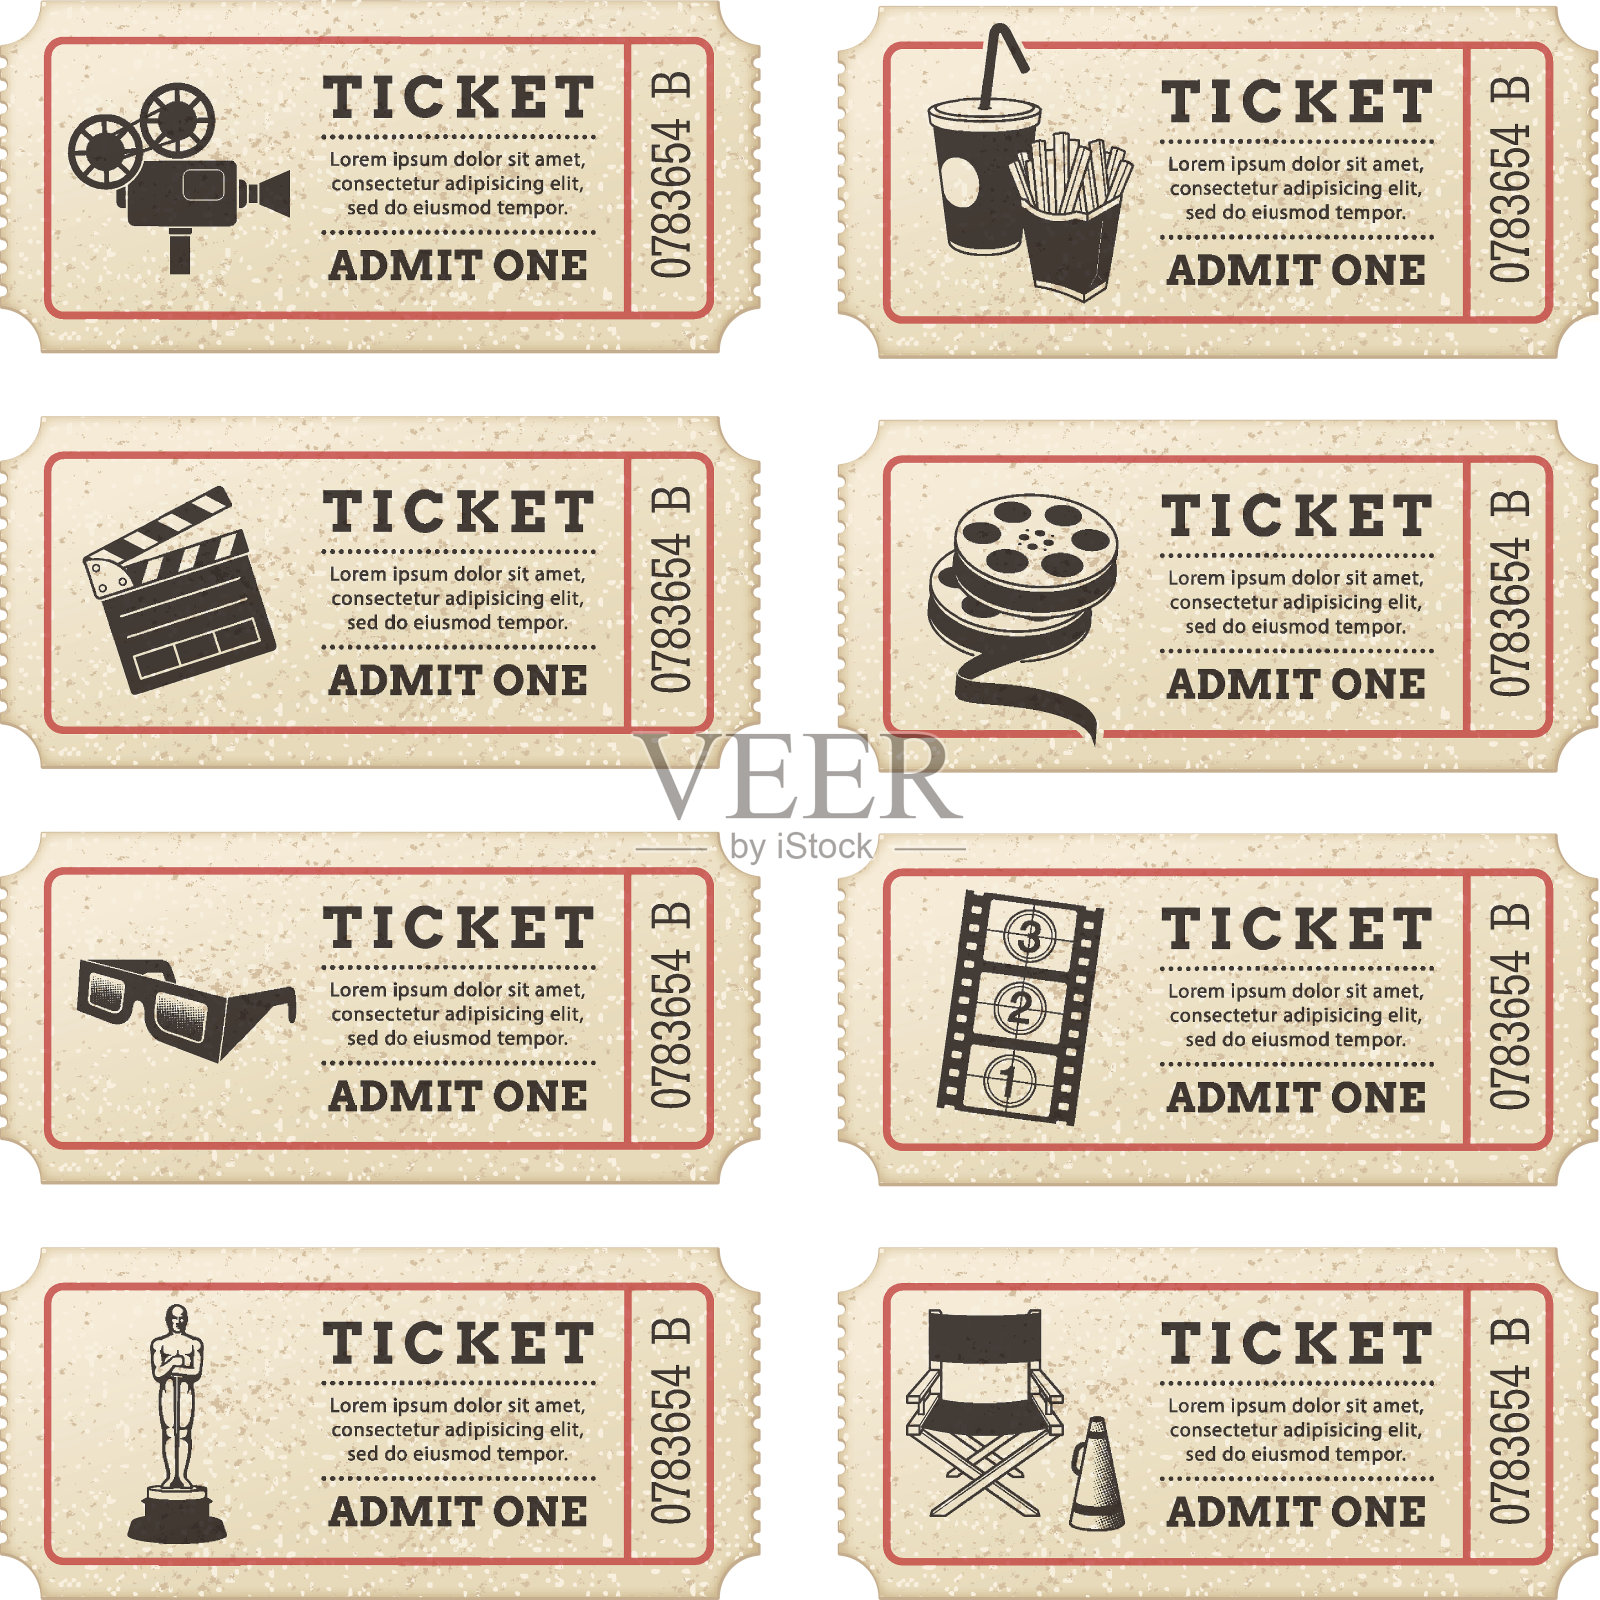 向量电影票设计模板素材